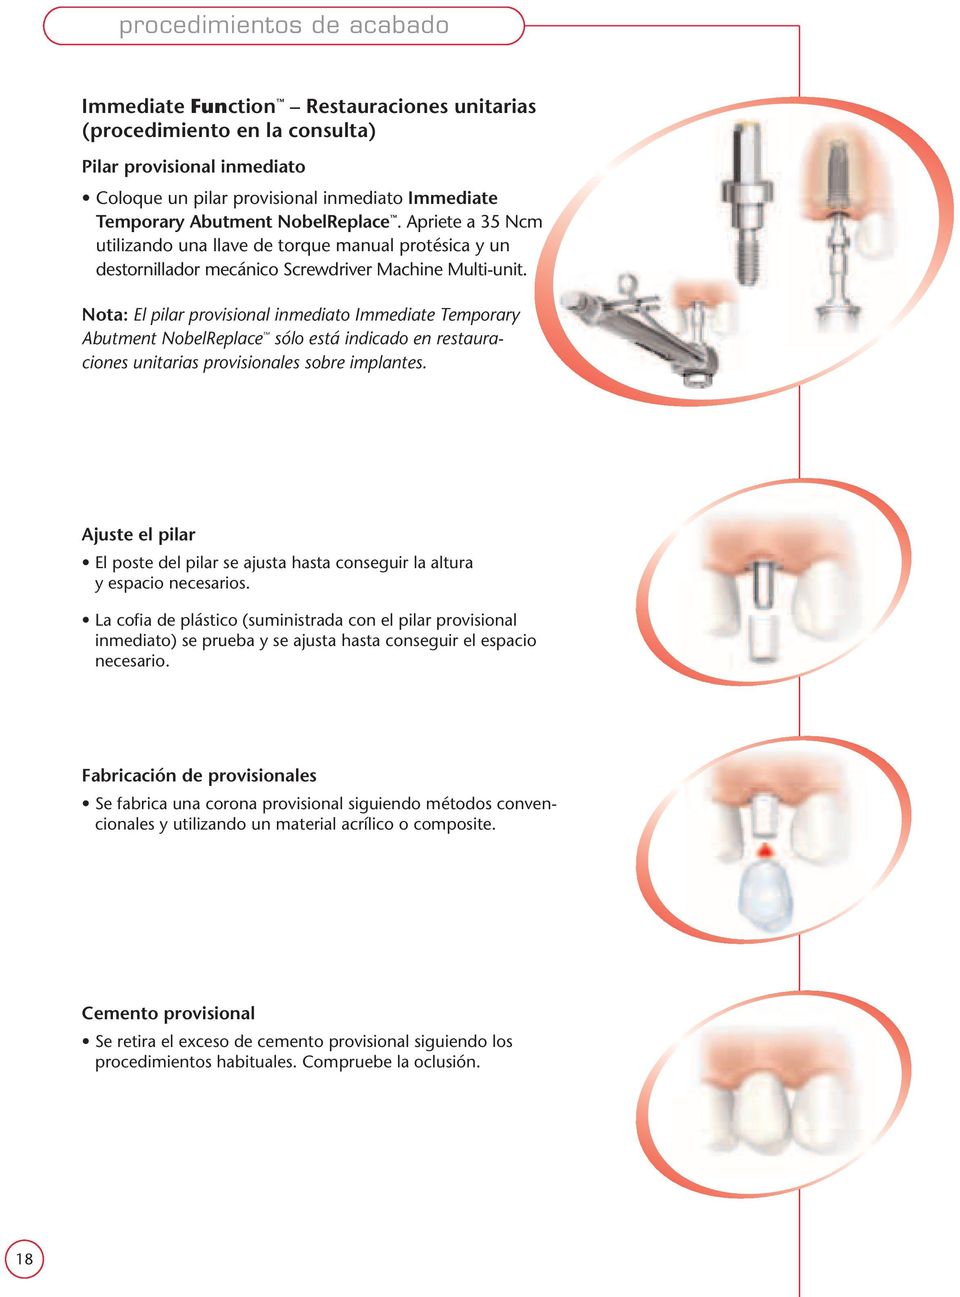 Nota: El pilar provisional inmediato Immediate Temporary Abutment NobelReplace sólo está indicado en restauraciones unitarias provisionales sobre implantes.